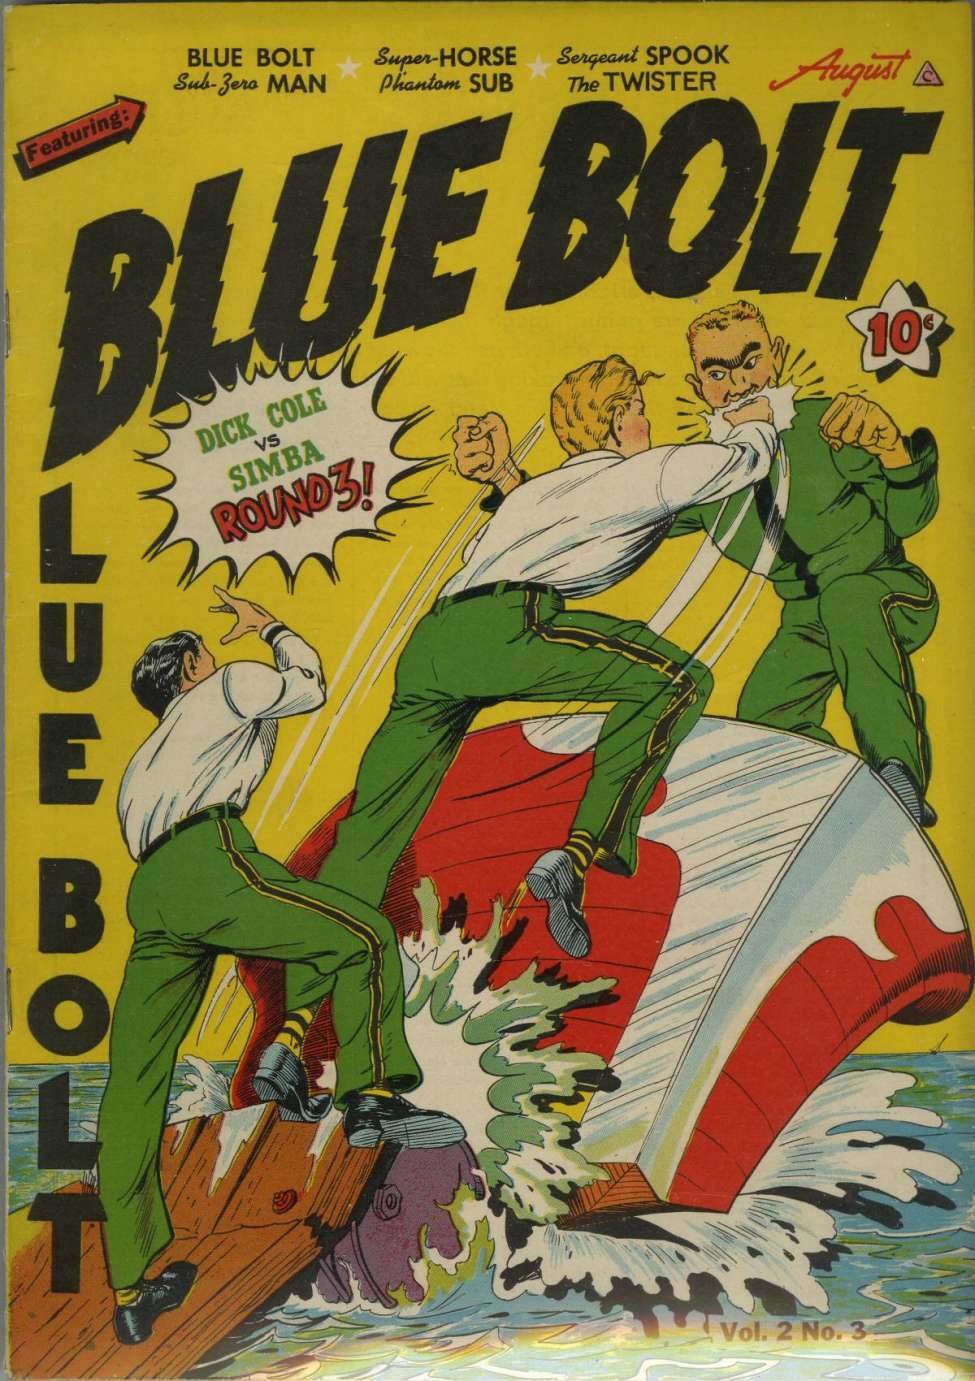 Comic Book Cover For Blue Bolt v2 3